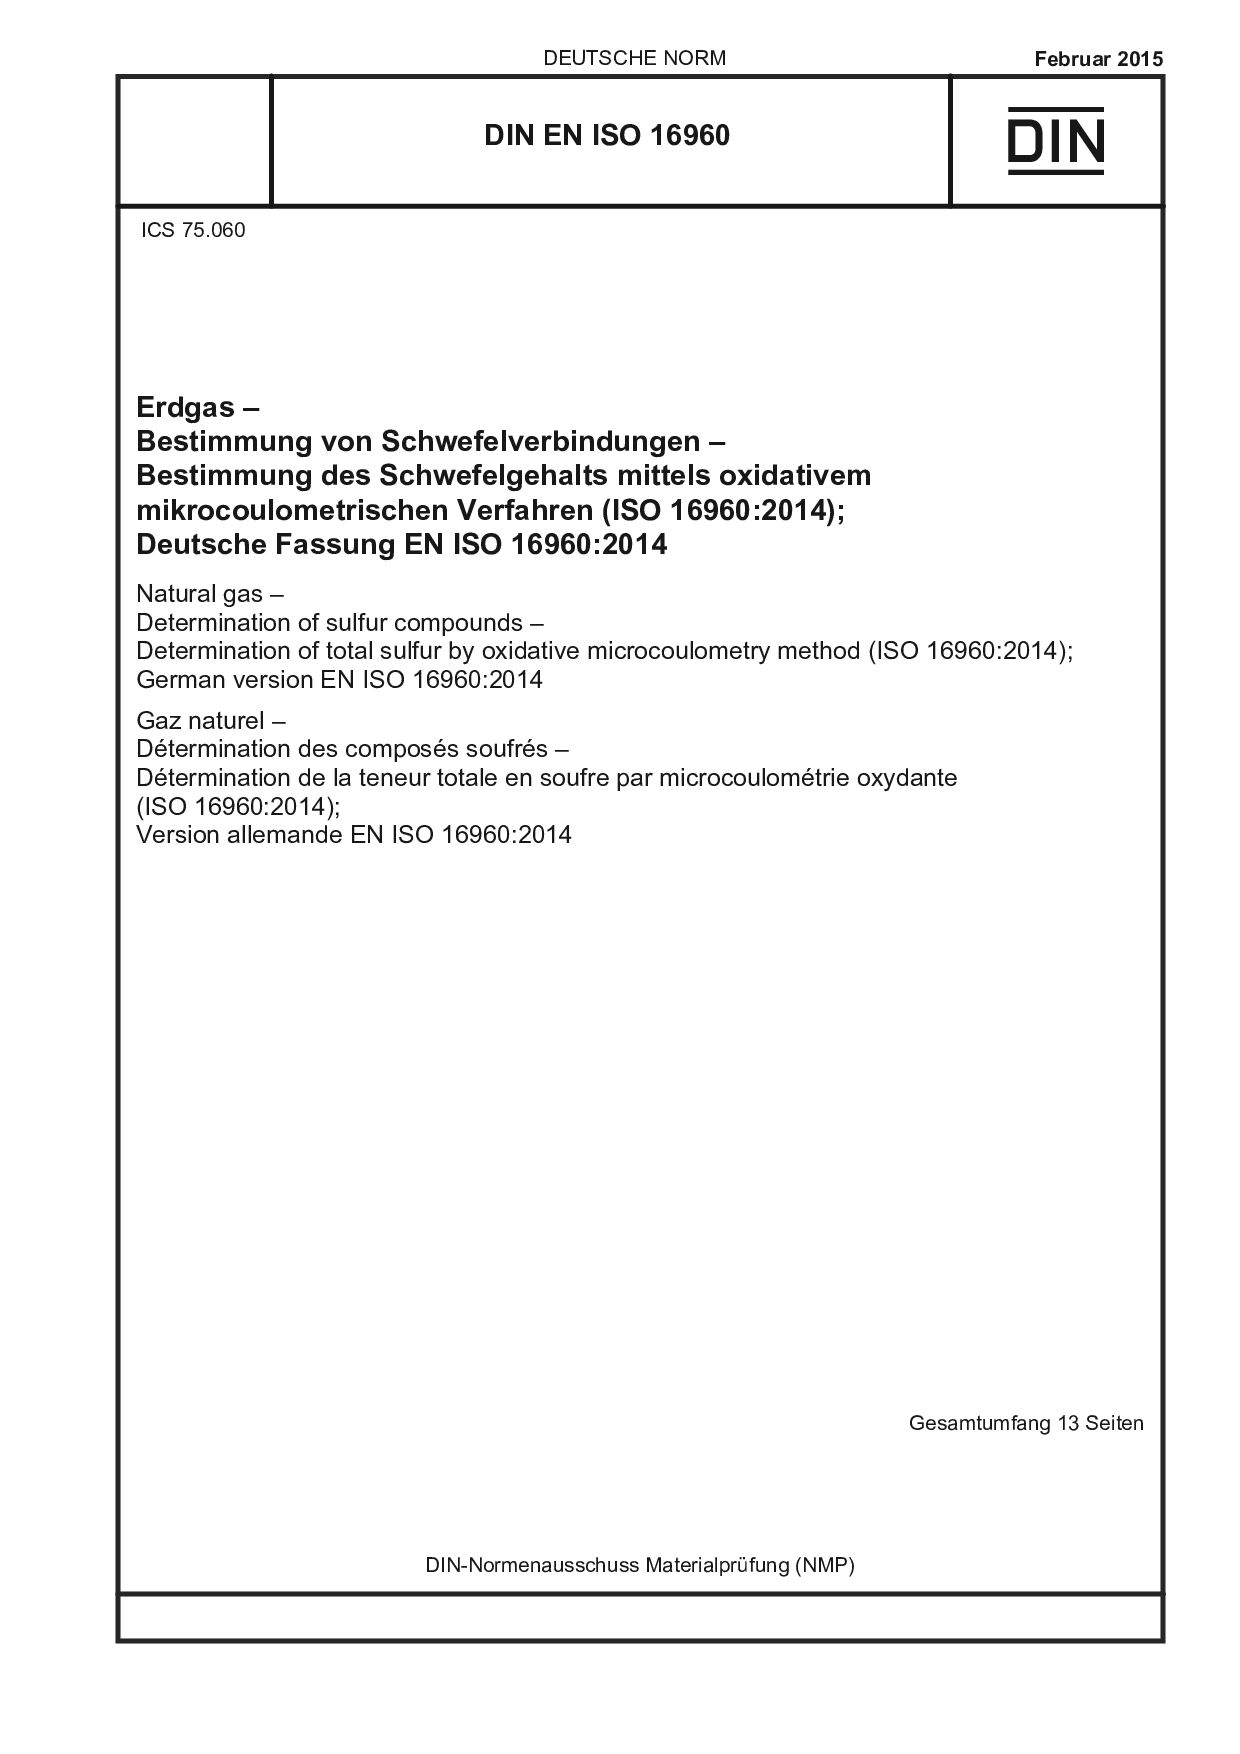 DIN EN ISO 16960:2015